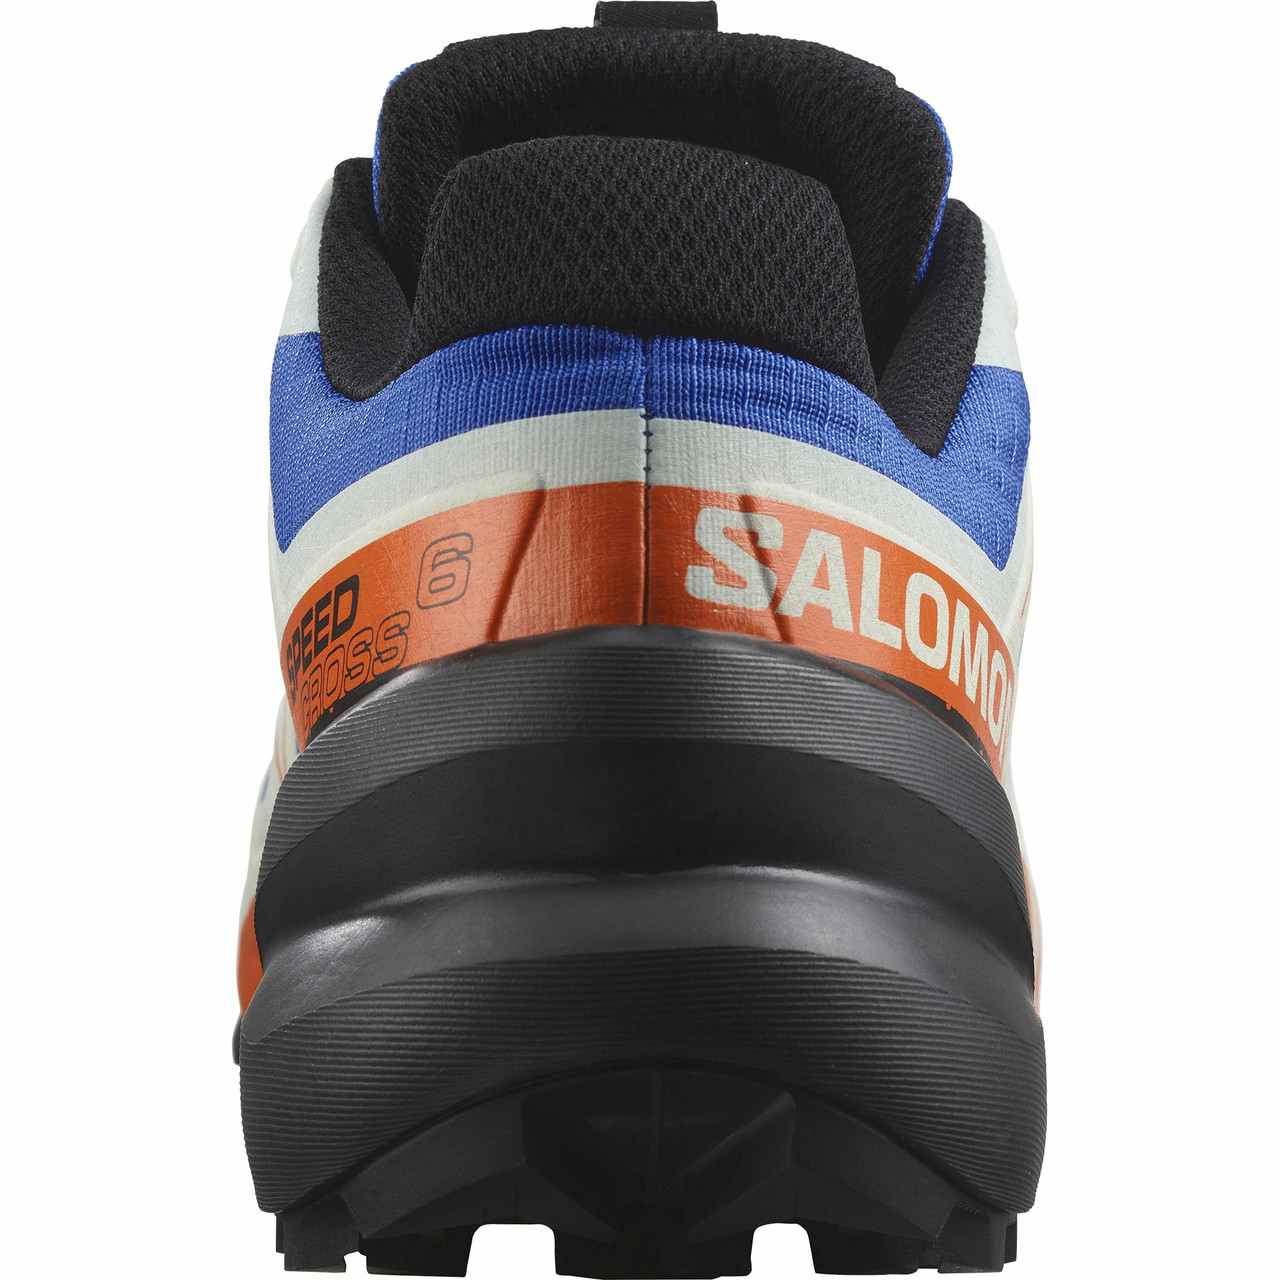 Chaussures de course sur sentier Speedcross 6 Bleu Lapis/Noir/Ibis